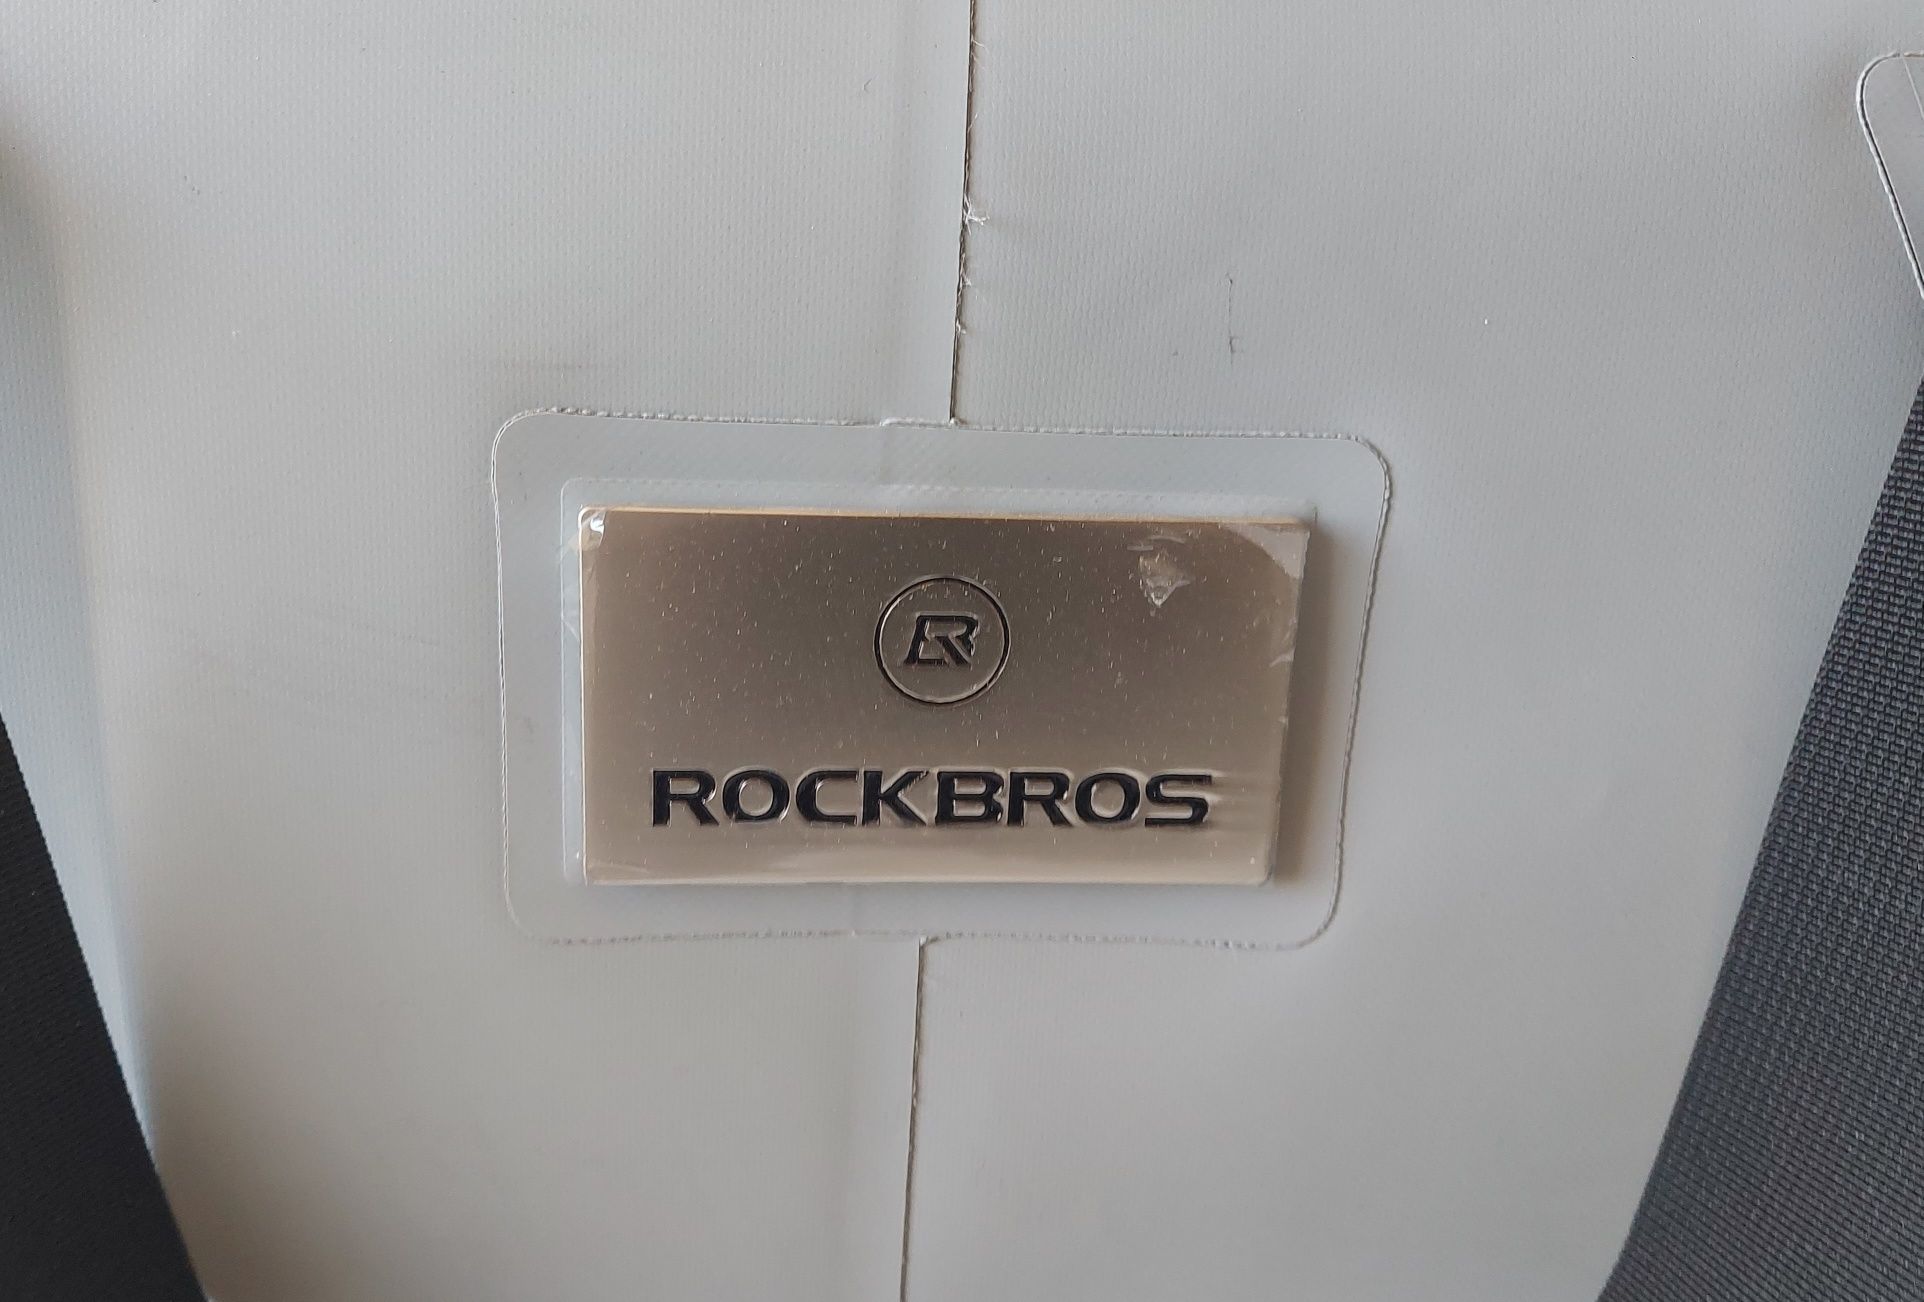 ROCKBROOS BX-003 przenośna lodowka torba termiczna